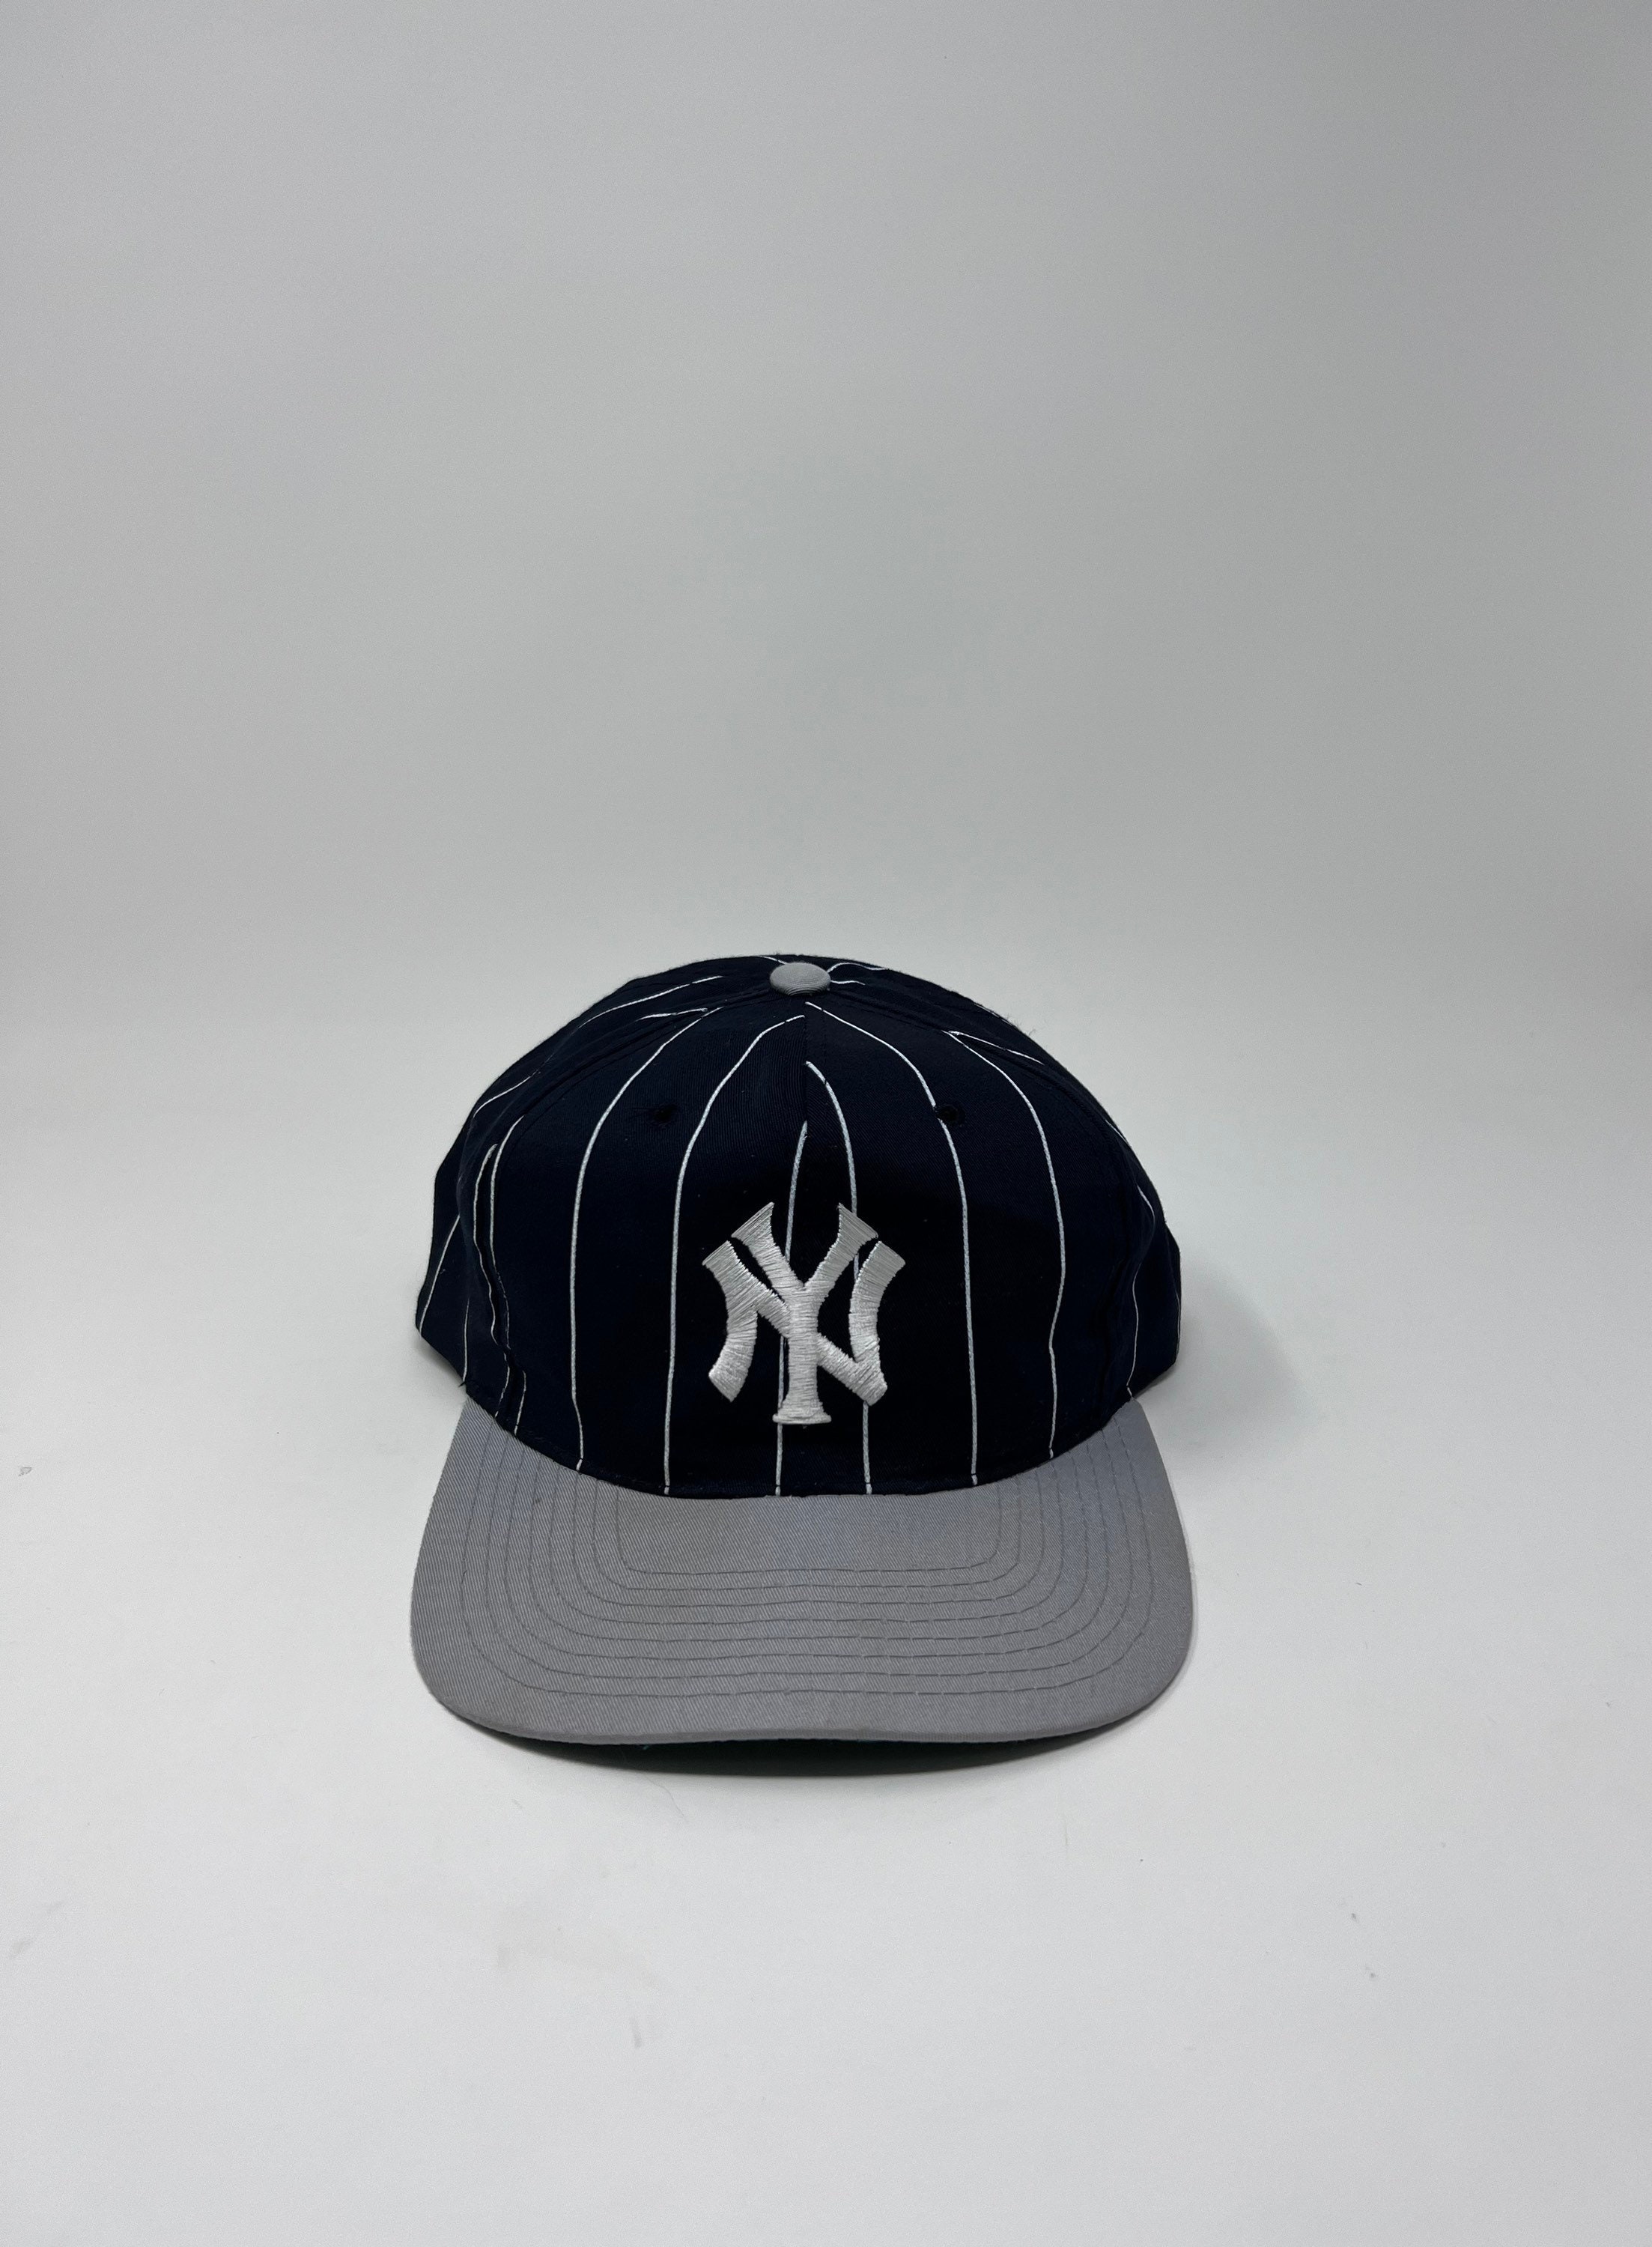 pinstripe new york yankees vintage cap